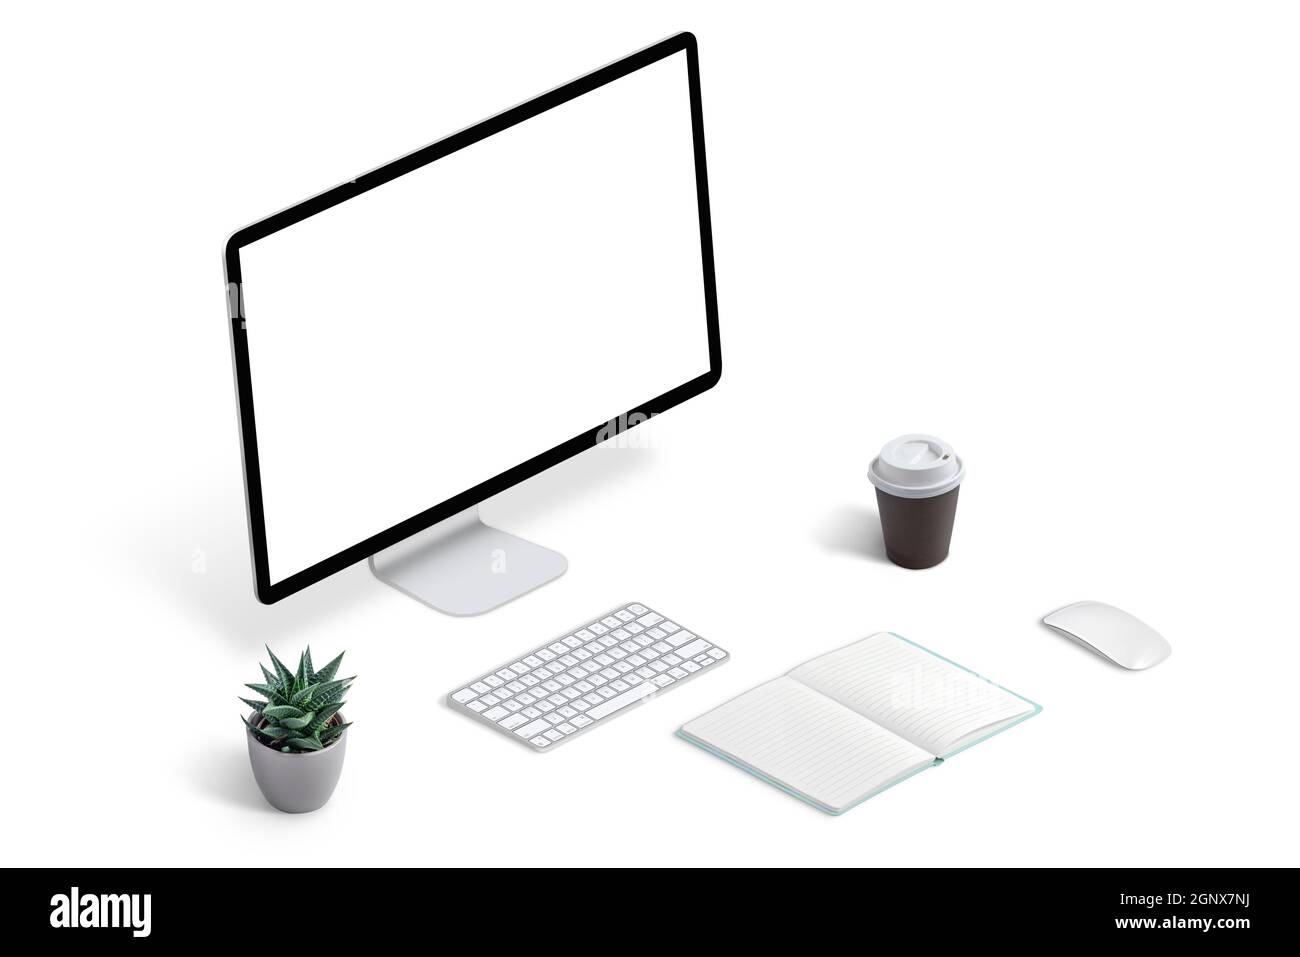 Espace de travail créatif avec maquette d'ordinateur, clavier, plante, café, souris et tapis. Concept de travail à domicile. Banque D'Images